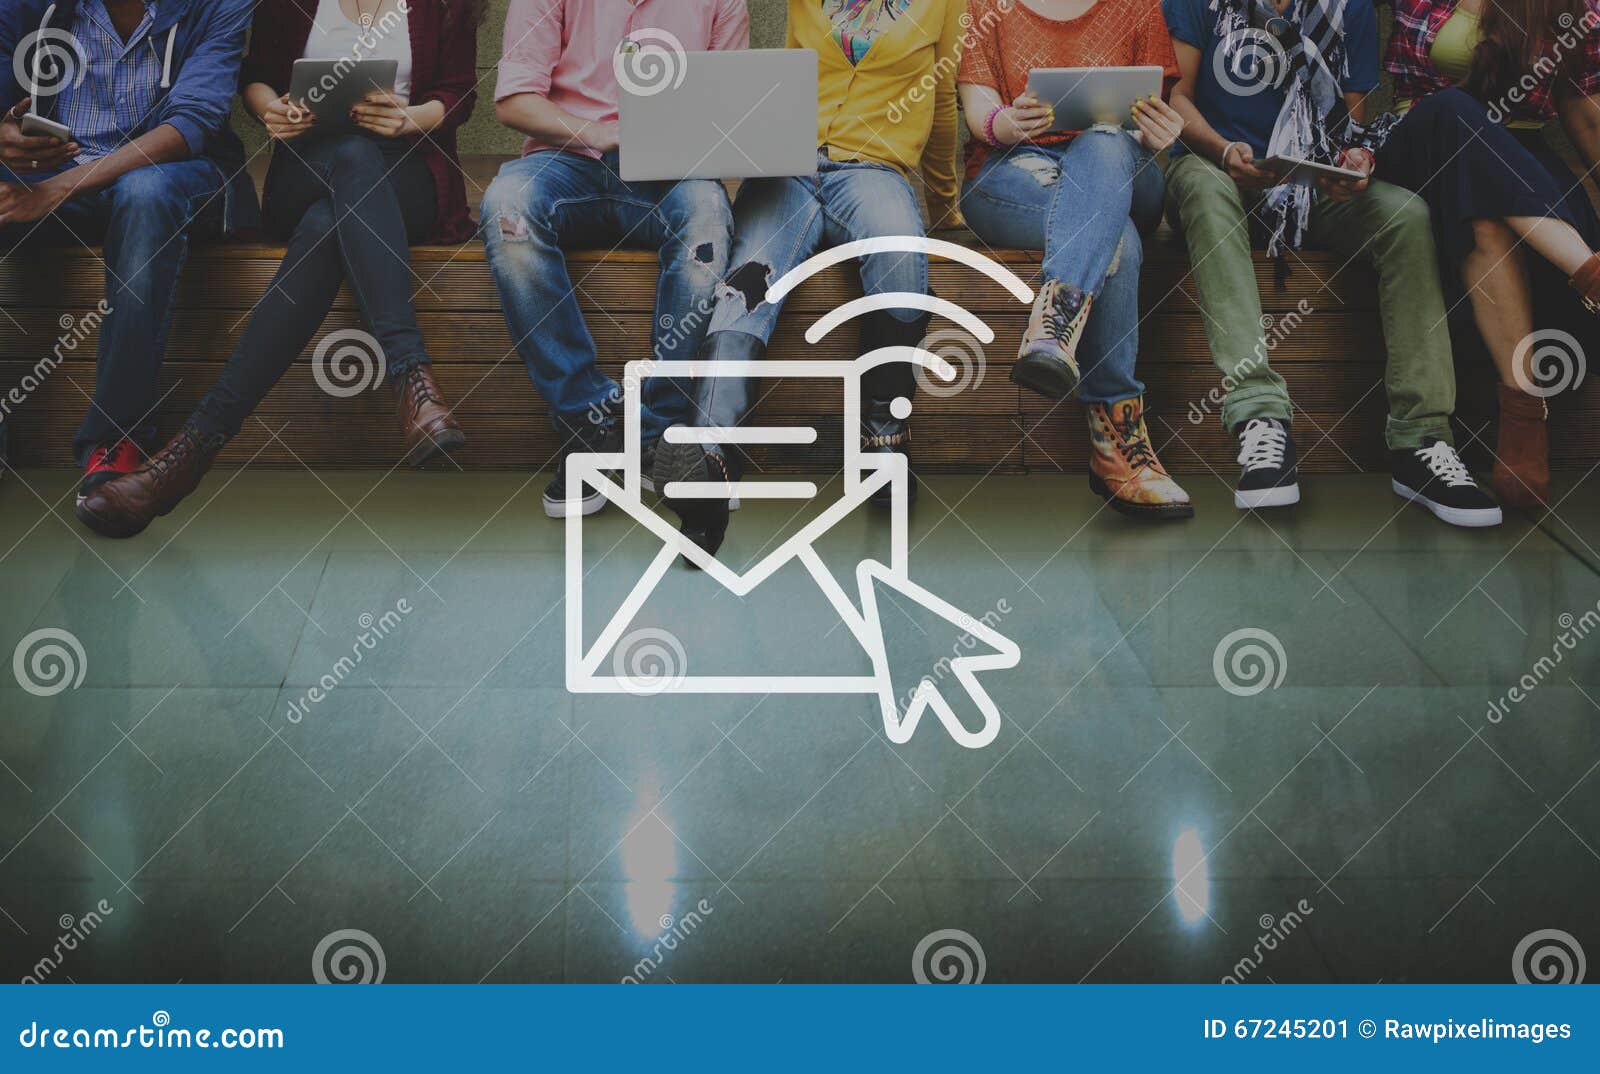 communication online messaging hotspot network concept